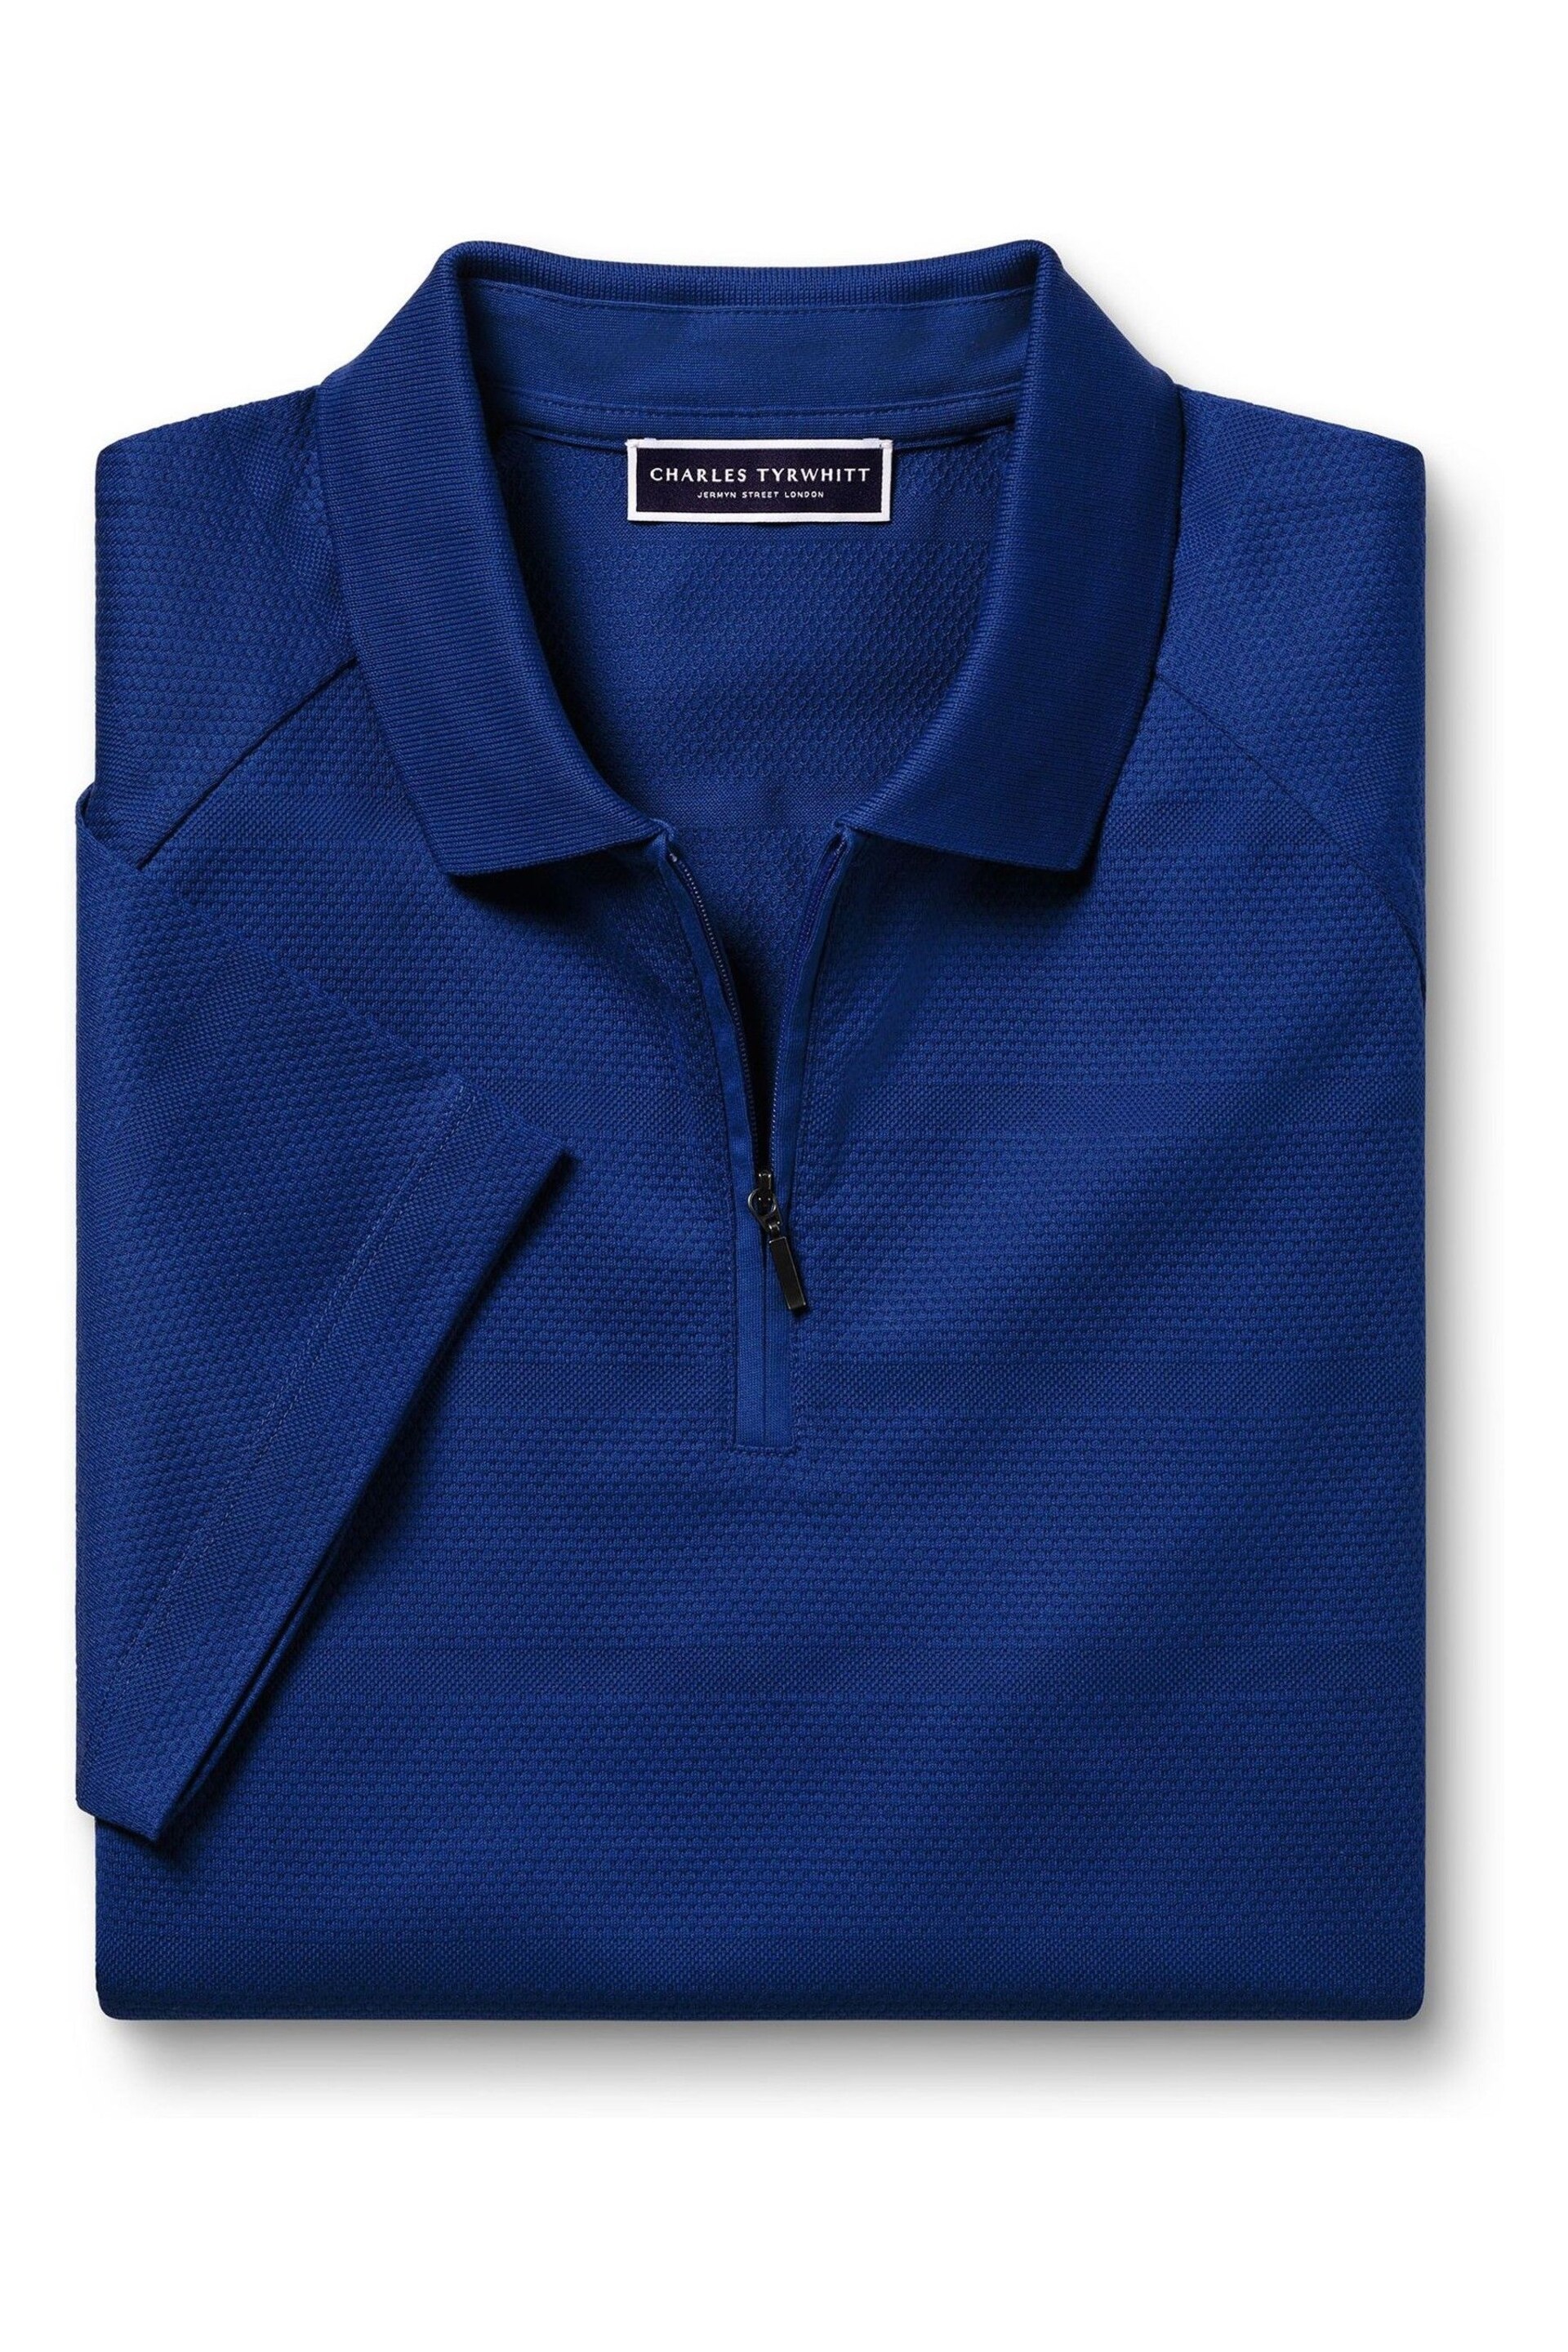 Charles Tyrwhitt Blue Popcorn Textured Stripe Tyrwhitt Cool Zip Neck Polo Shirt - Image 3 of 5